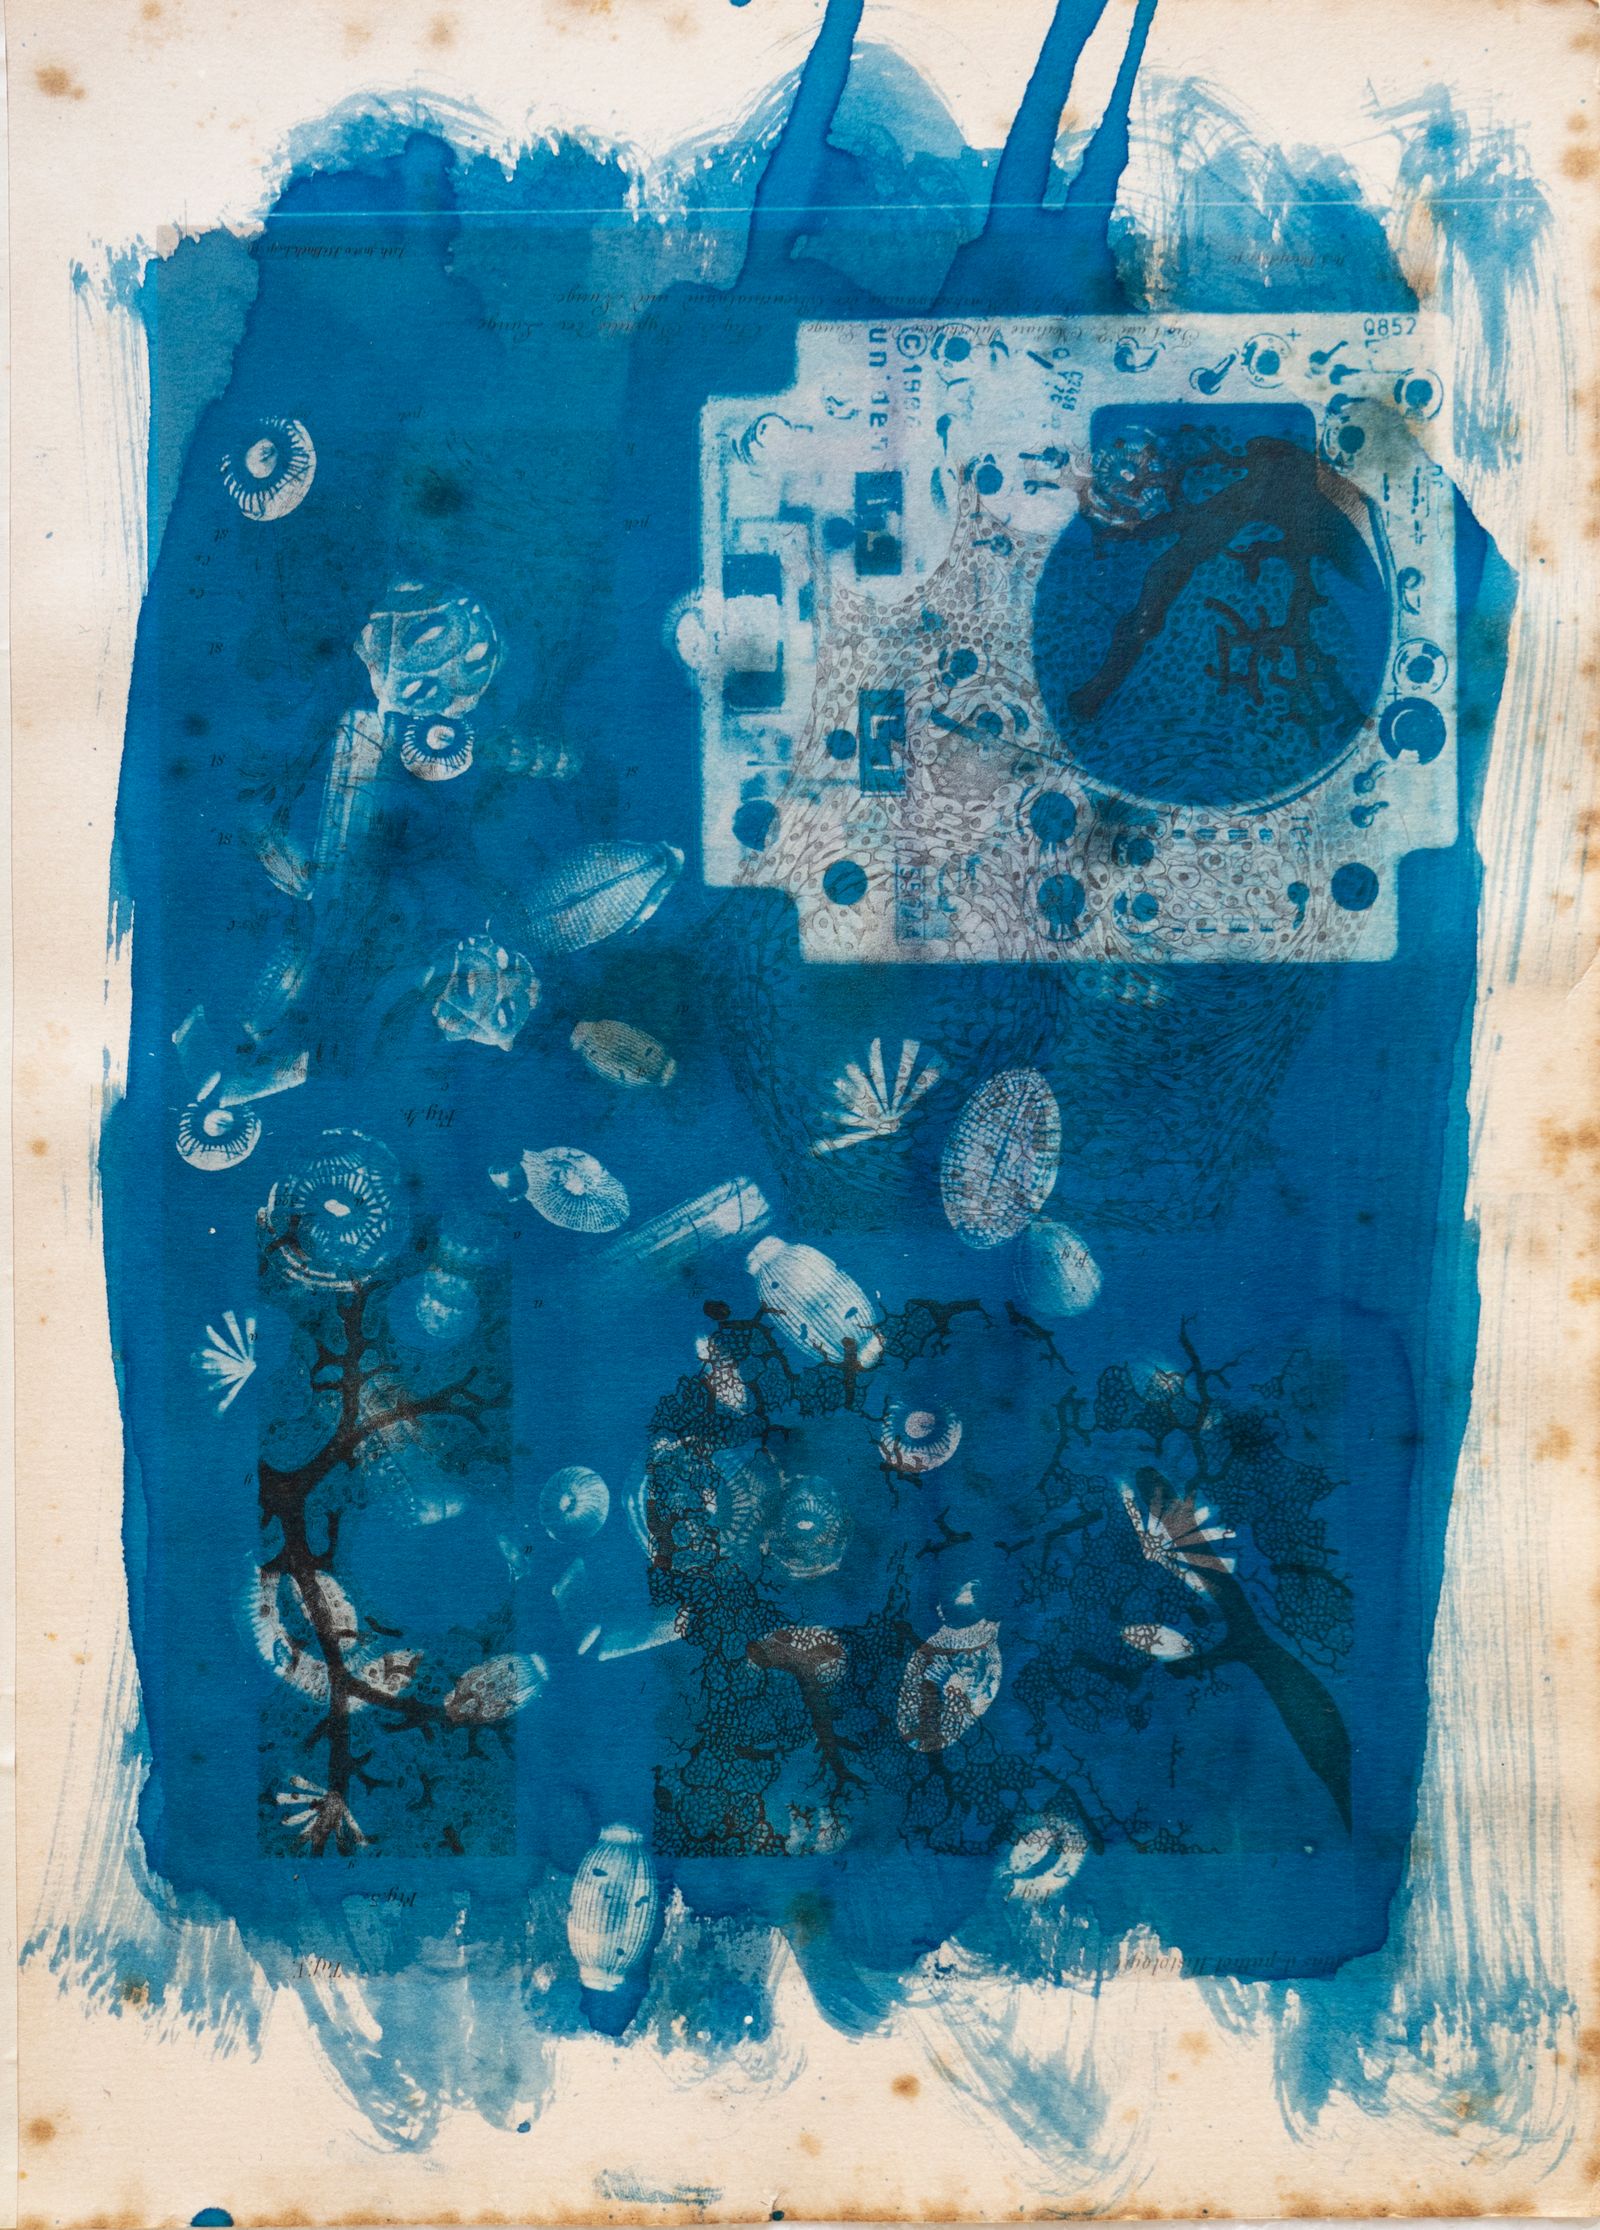 © Florence Iff - Amalgamated Fragmentation/ Technosphere 3 cyanotype on vintage lithography